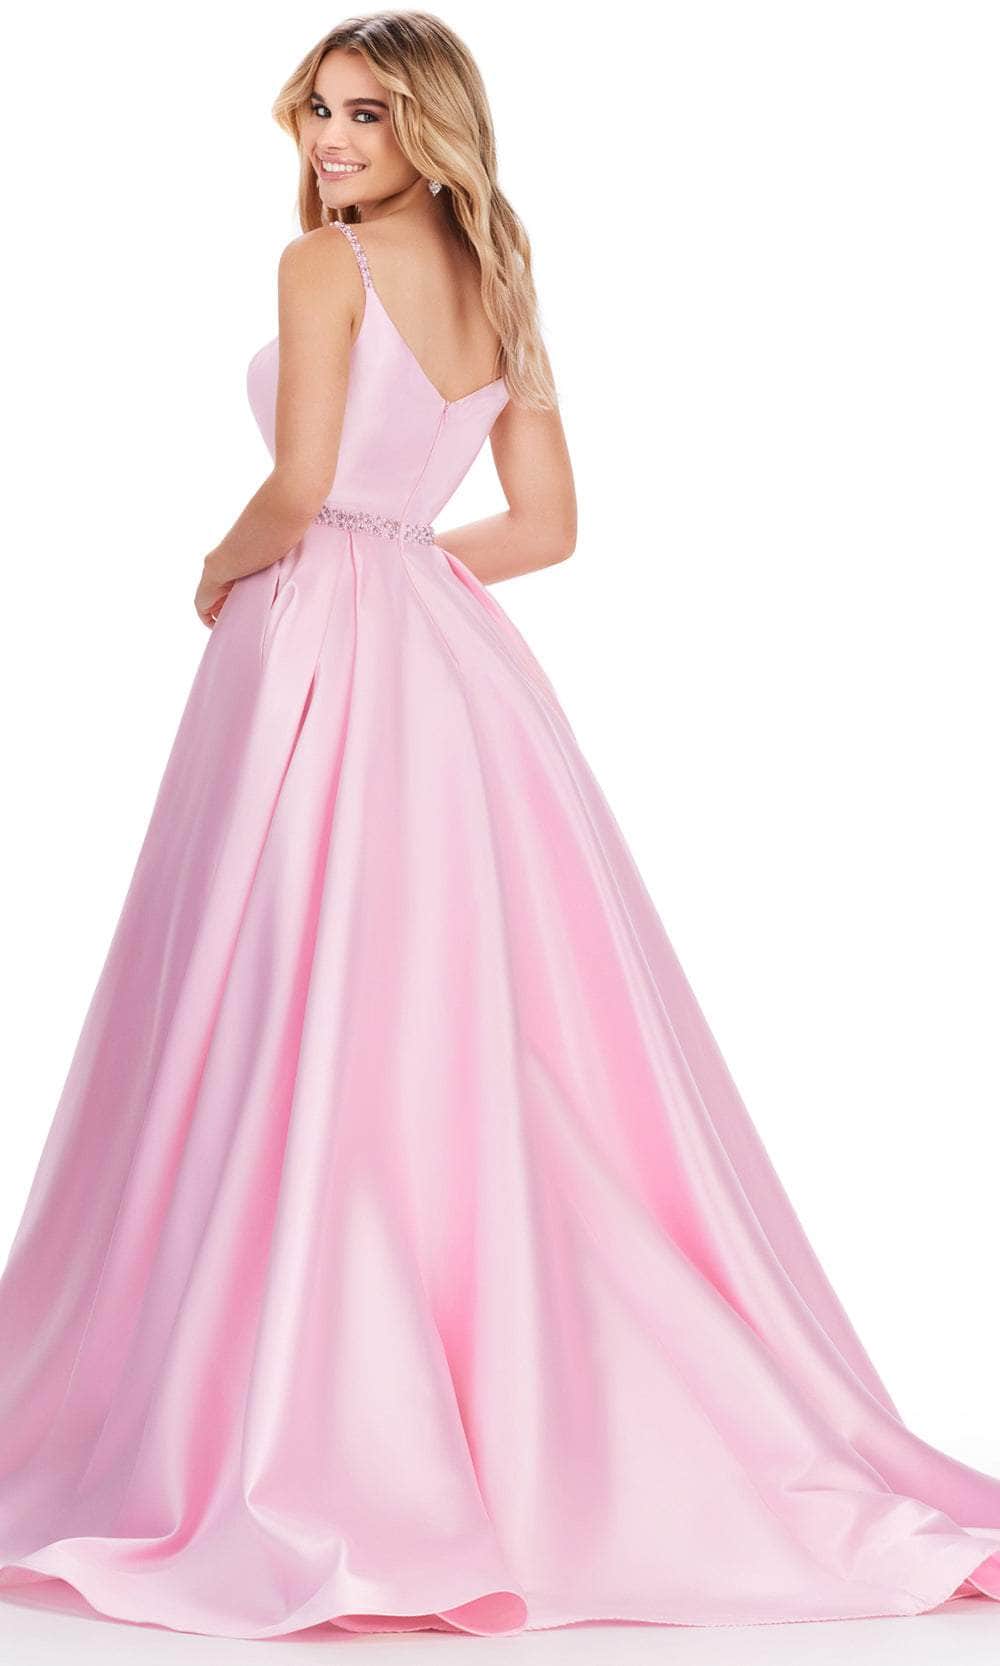 Ashley Lauren 11540 - Satin Beaded Waist Prom Dress Prom Dresses